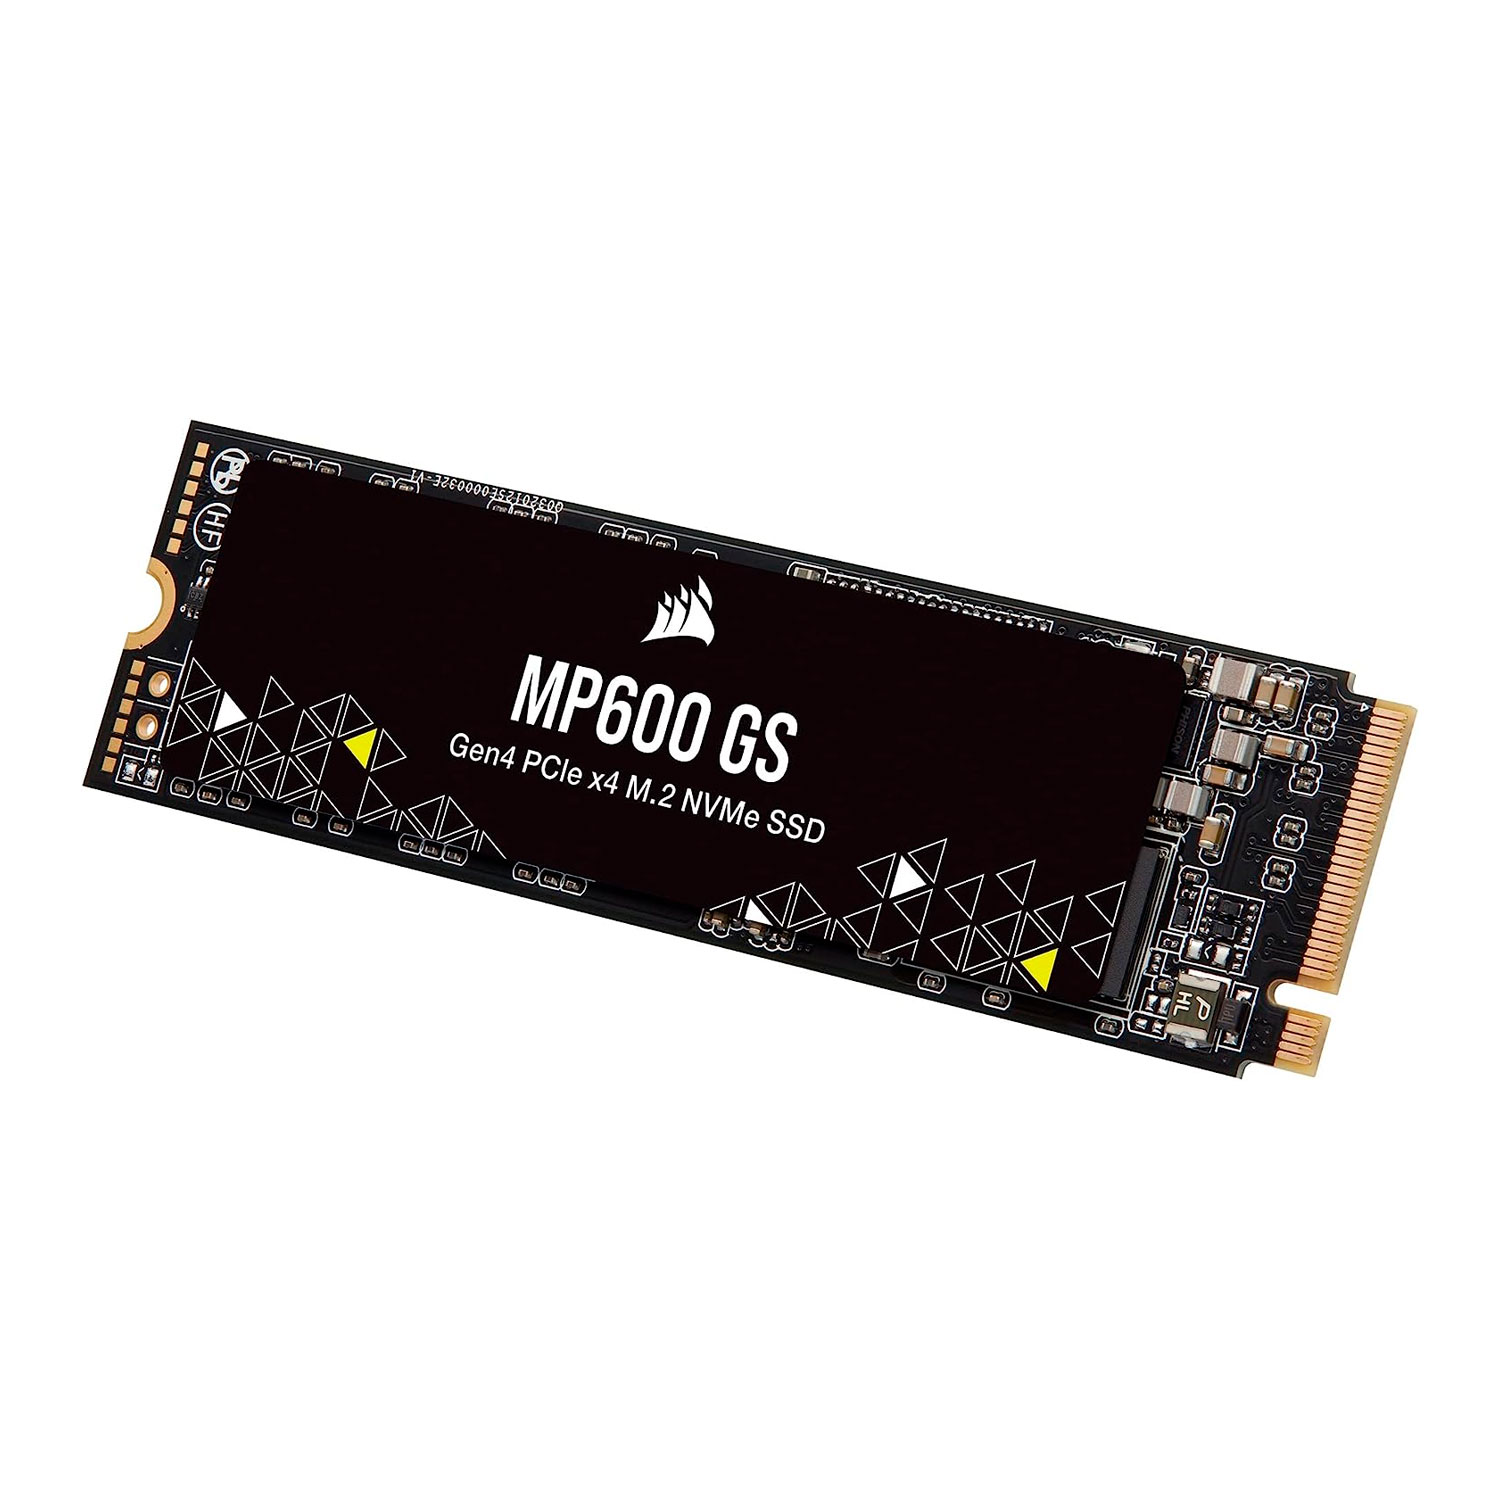 SSD M.2 Corsair MP600 500GB NVMe PCIe Gen 4 - CSSD-F0500GBMP600GS
